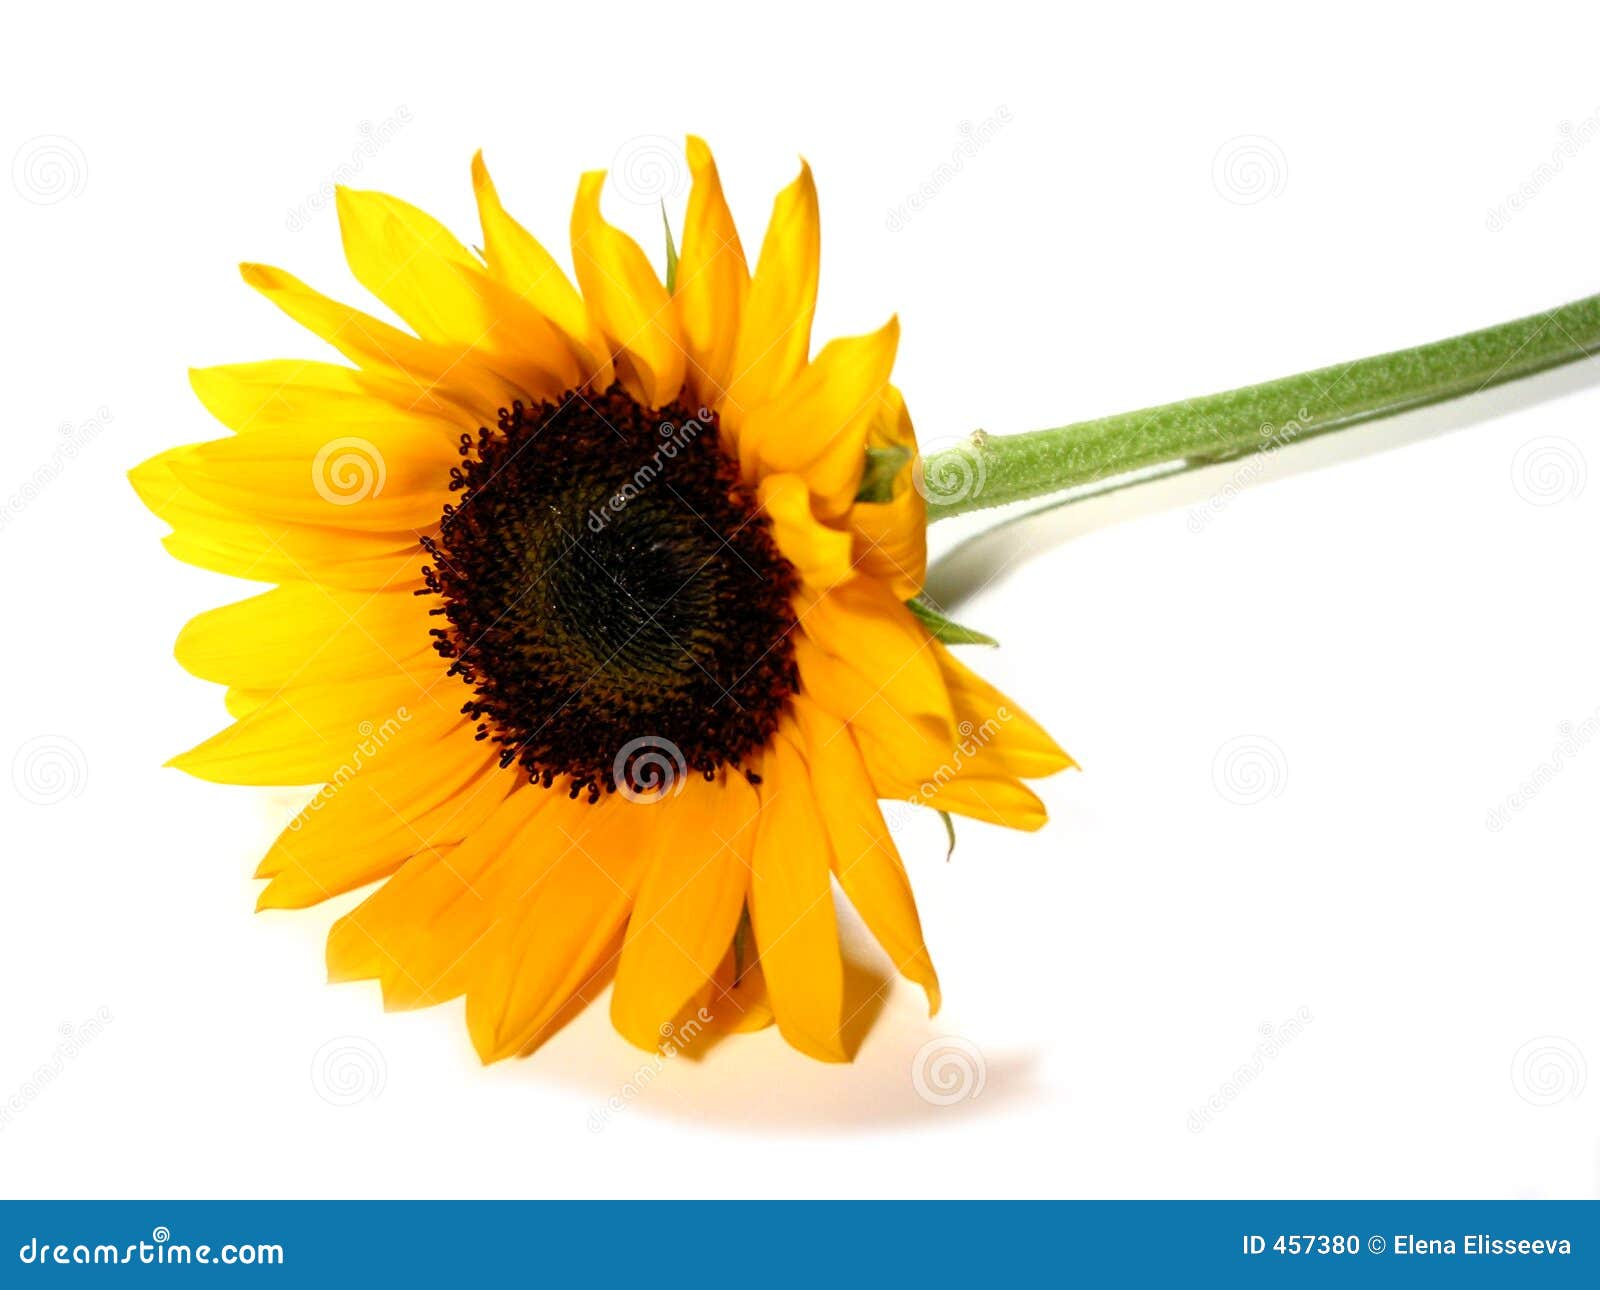 Sunflower White Background Stock Photo - Image: 457380